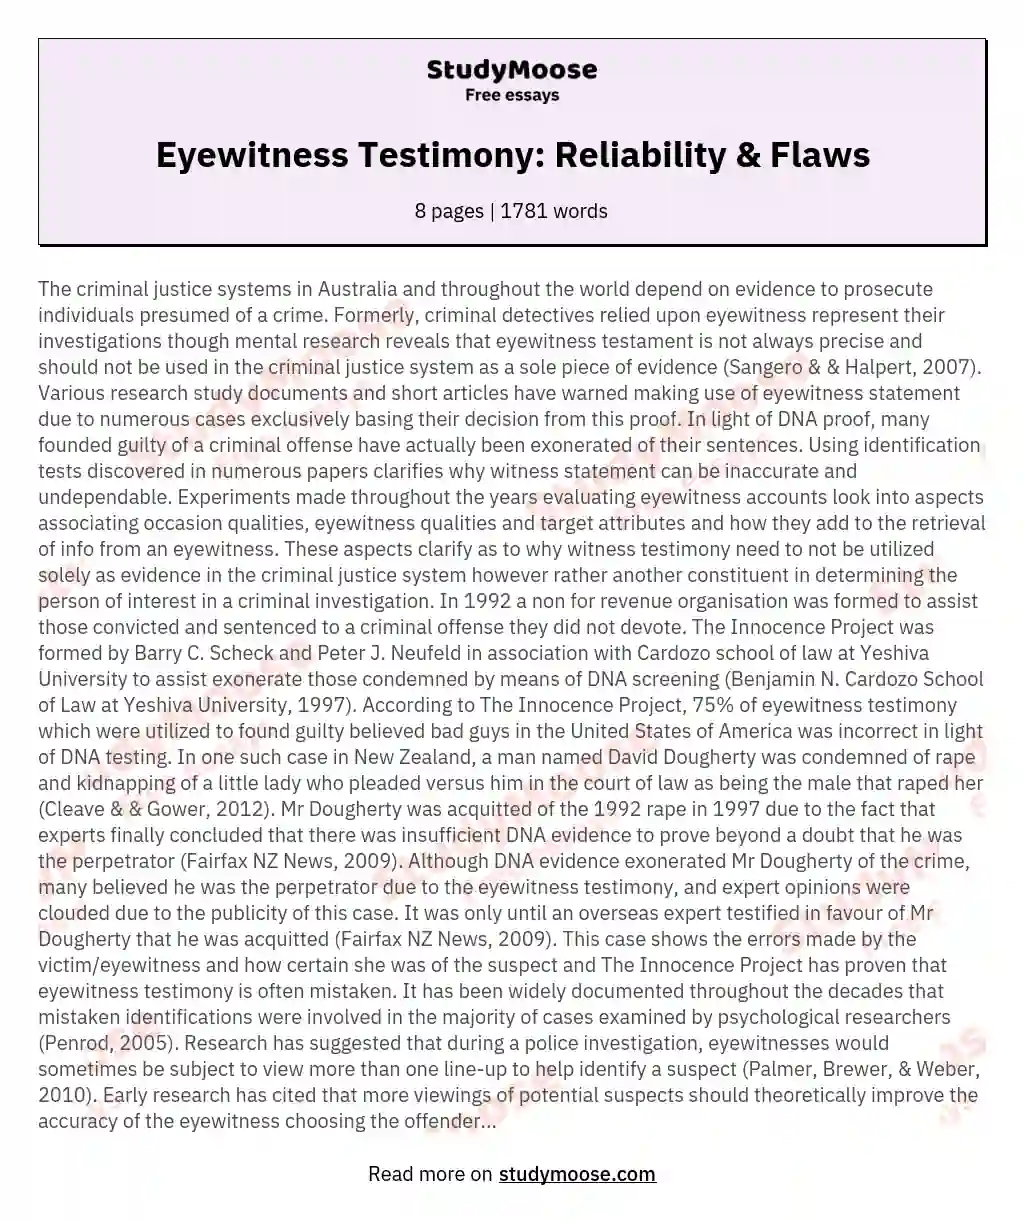 Eyewitness Testimony: Reliability & Flaws essay